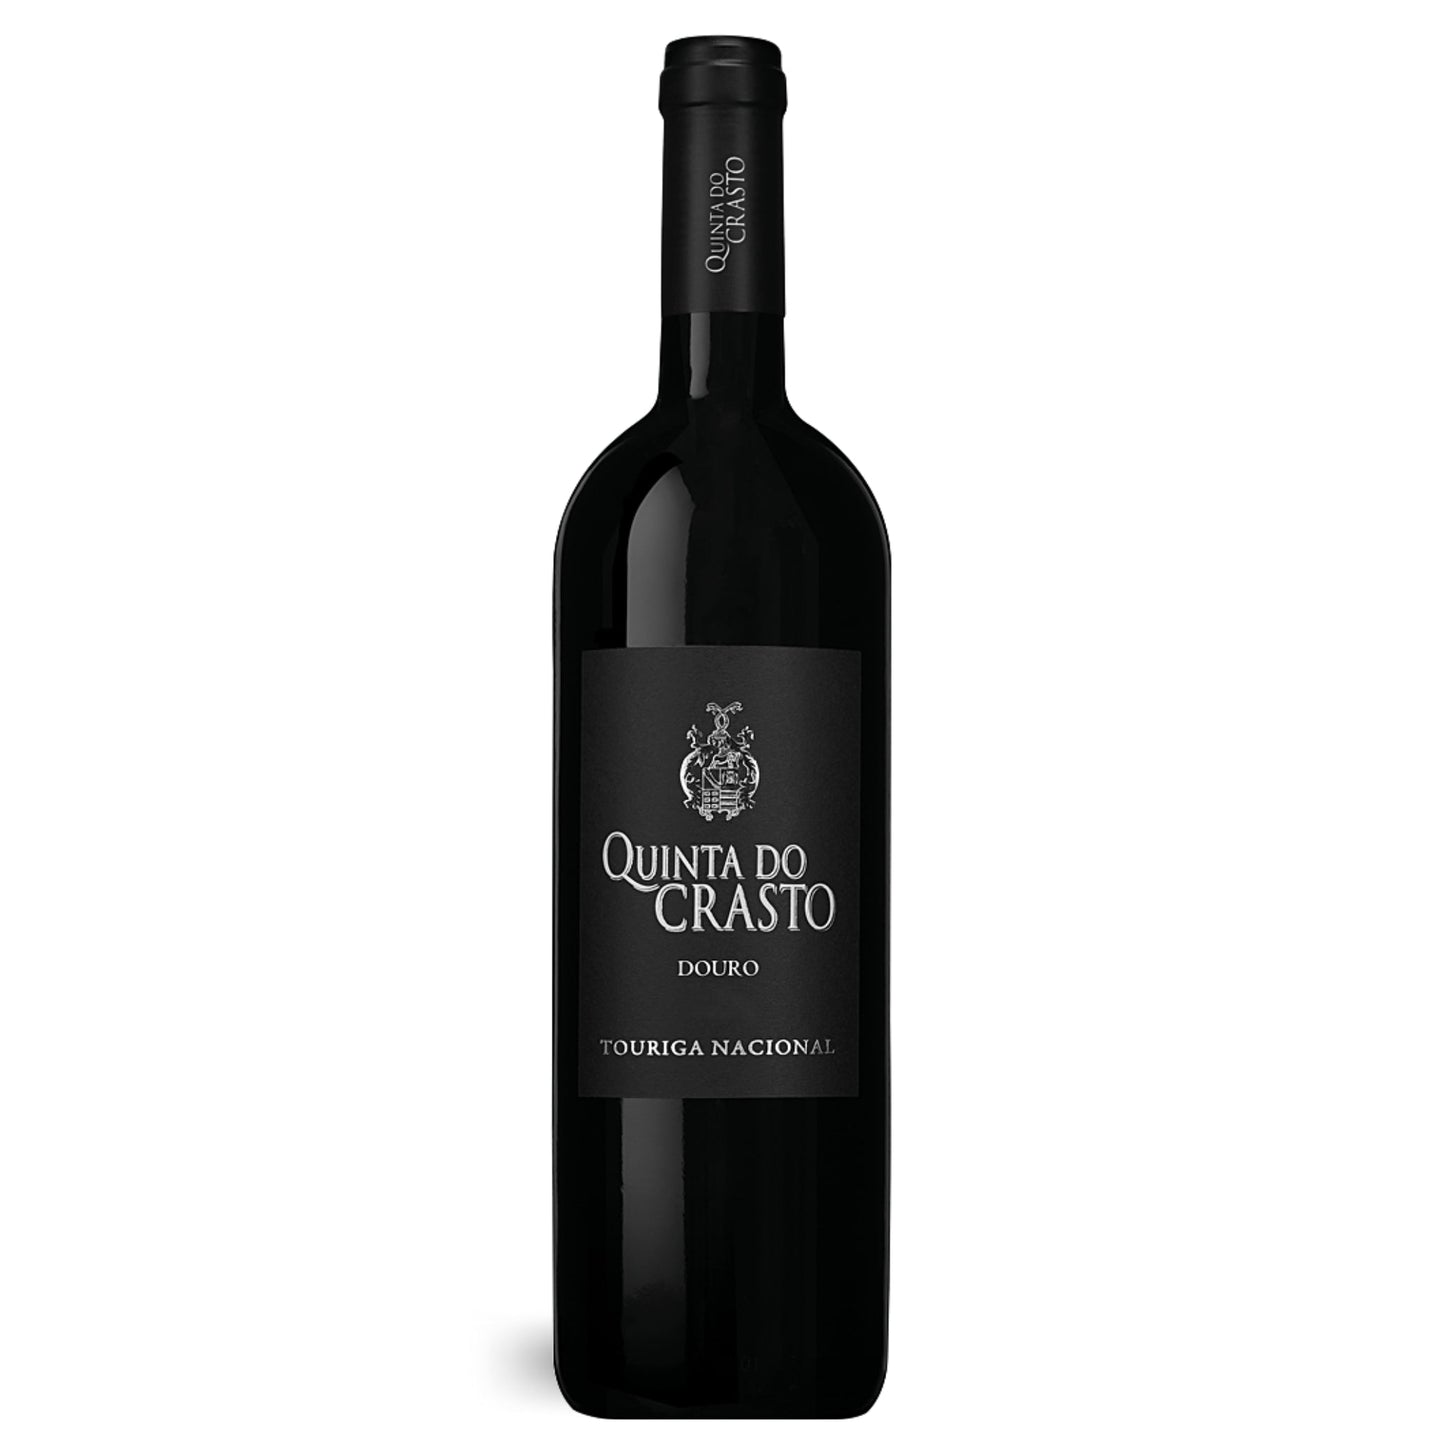 Rotweinflasche Quinta do Crasto Touriga Nacional Rotwein 2018 aus dem Douro in Portugal. Erhältlich im Weinshop der Vinho Bar in Wuppertal.